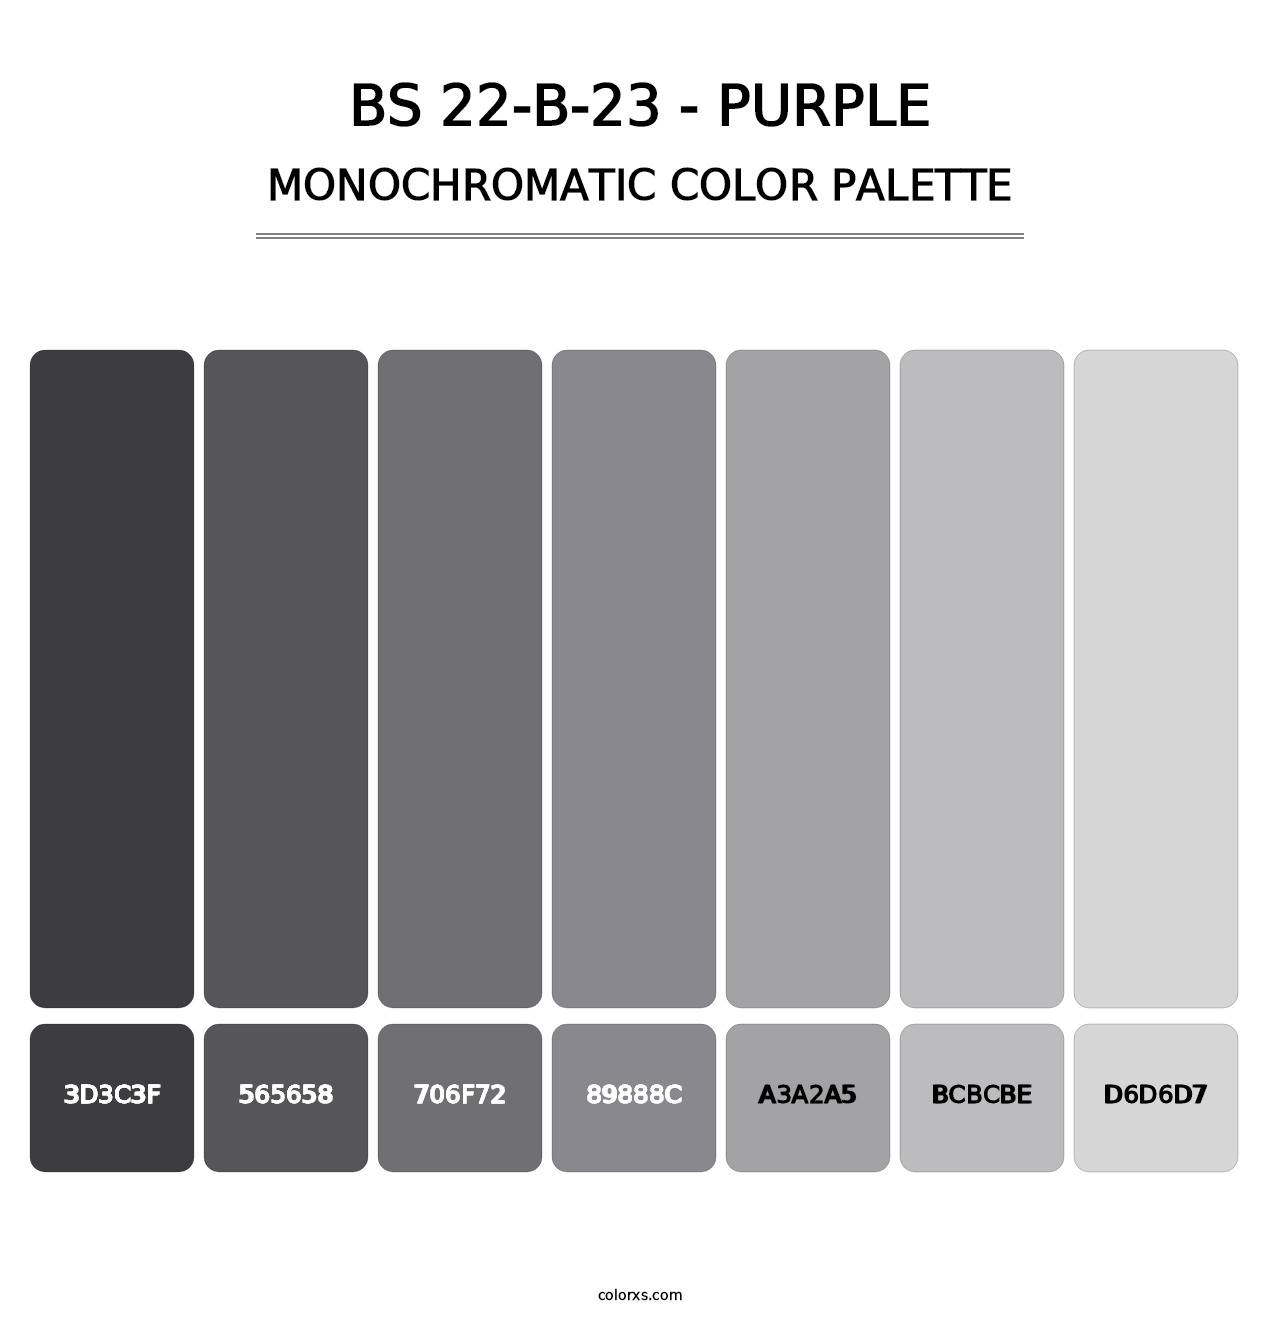 BS 22-B-23 - Purple - Monochromatic Color Palette